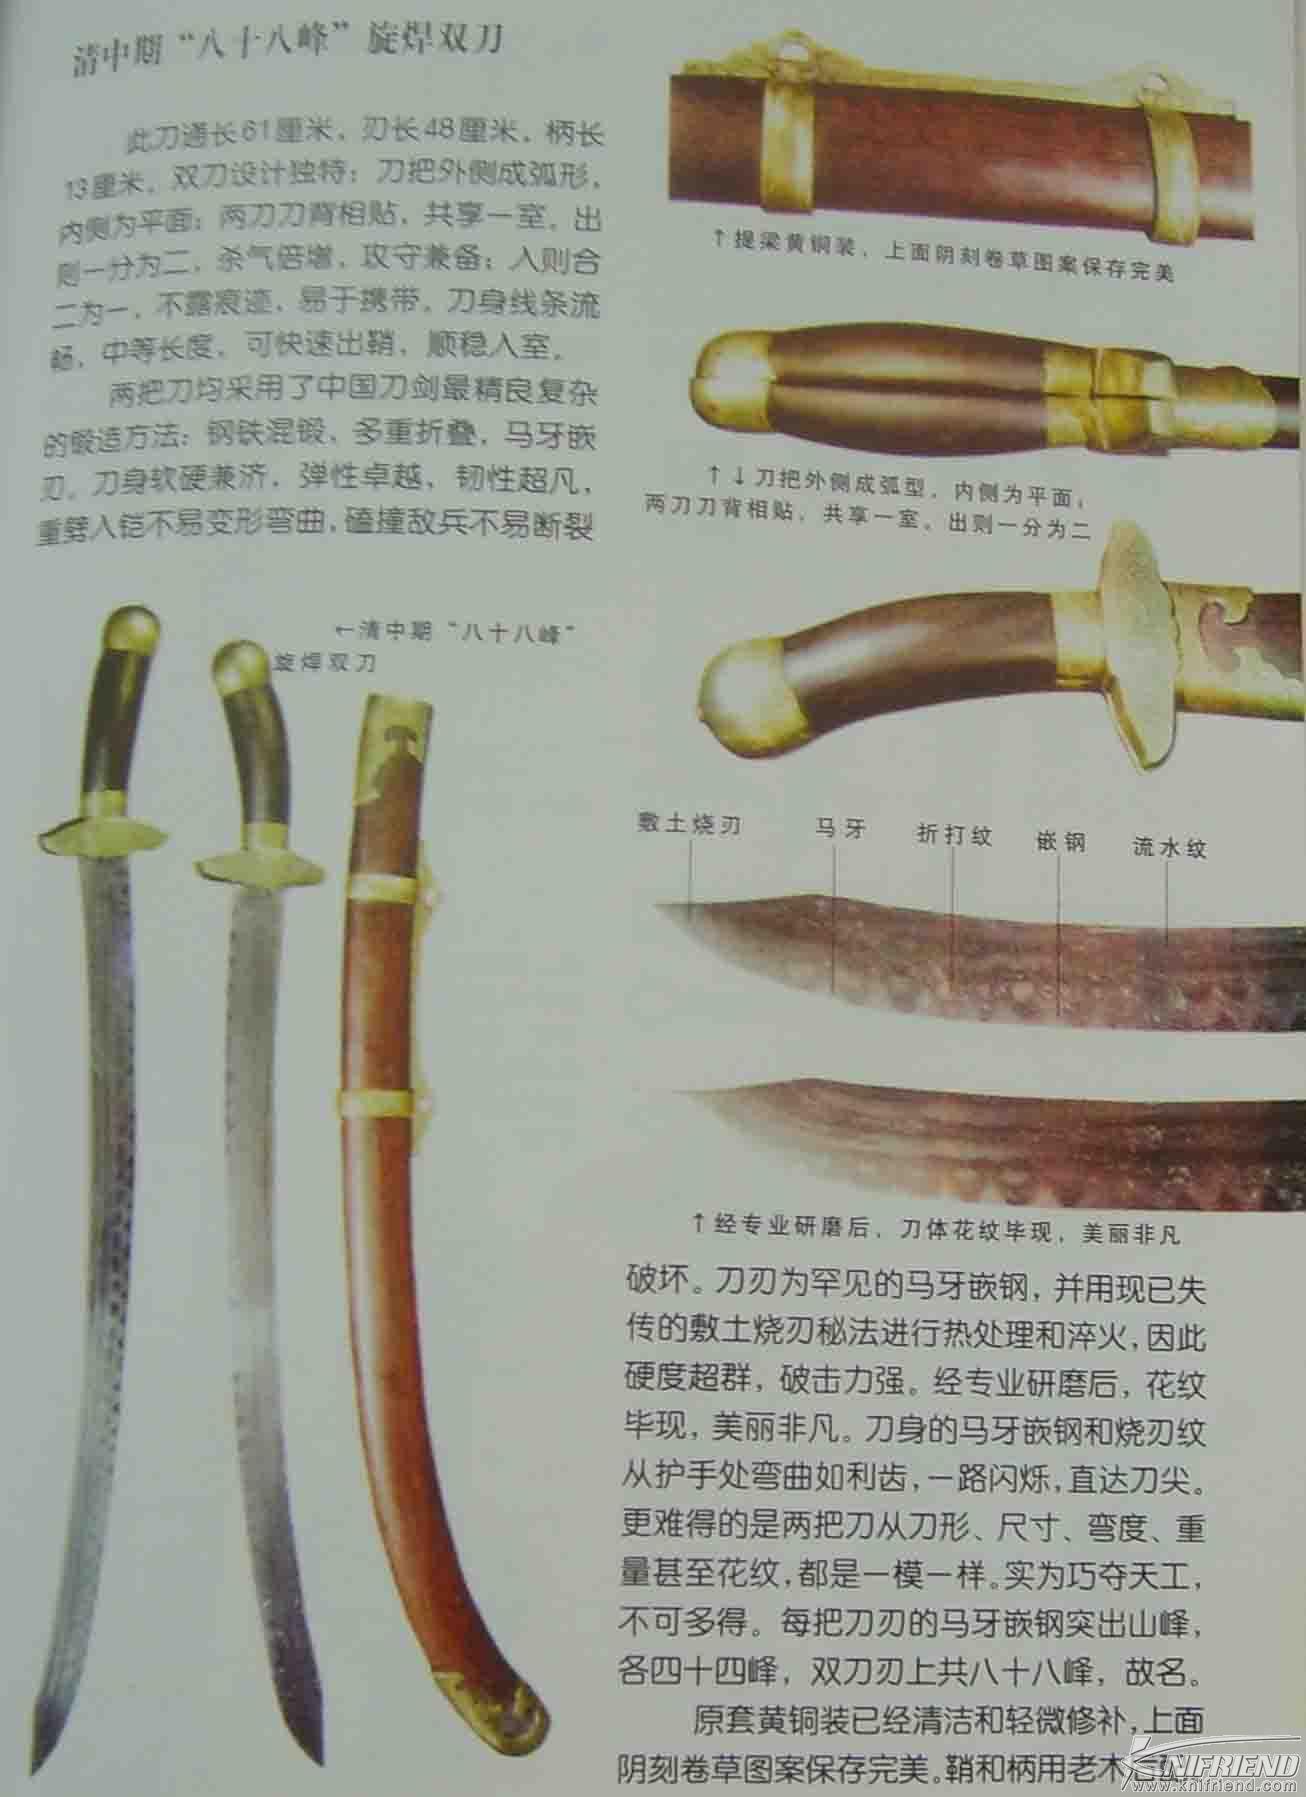 历史的轨迹---中国刀与日本刀发展简述(新手教学帖)_21